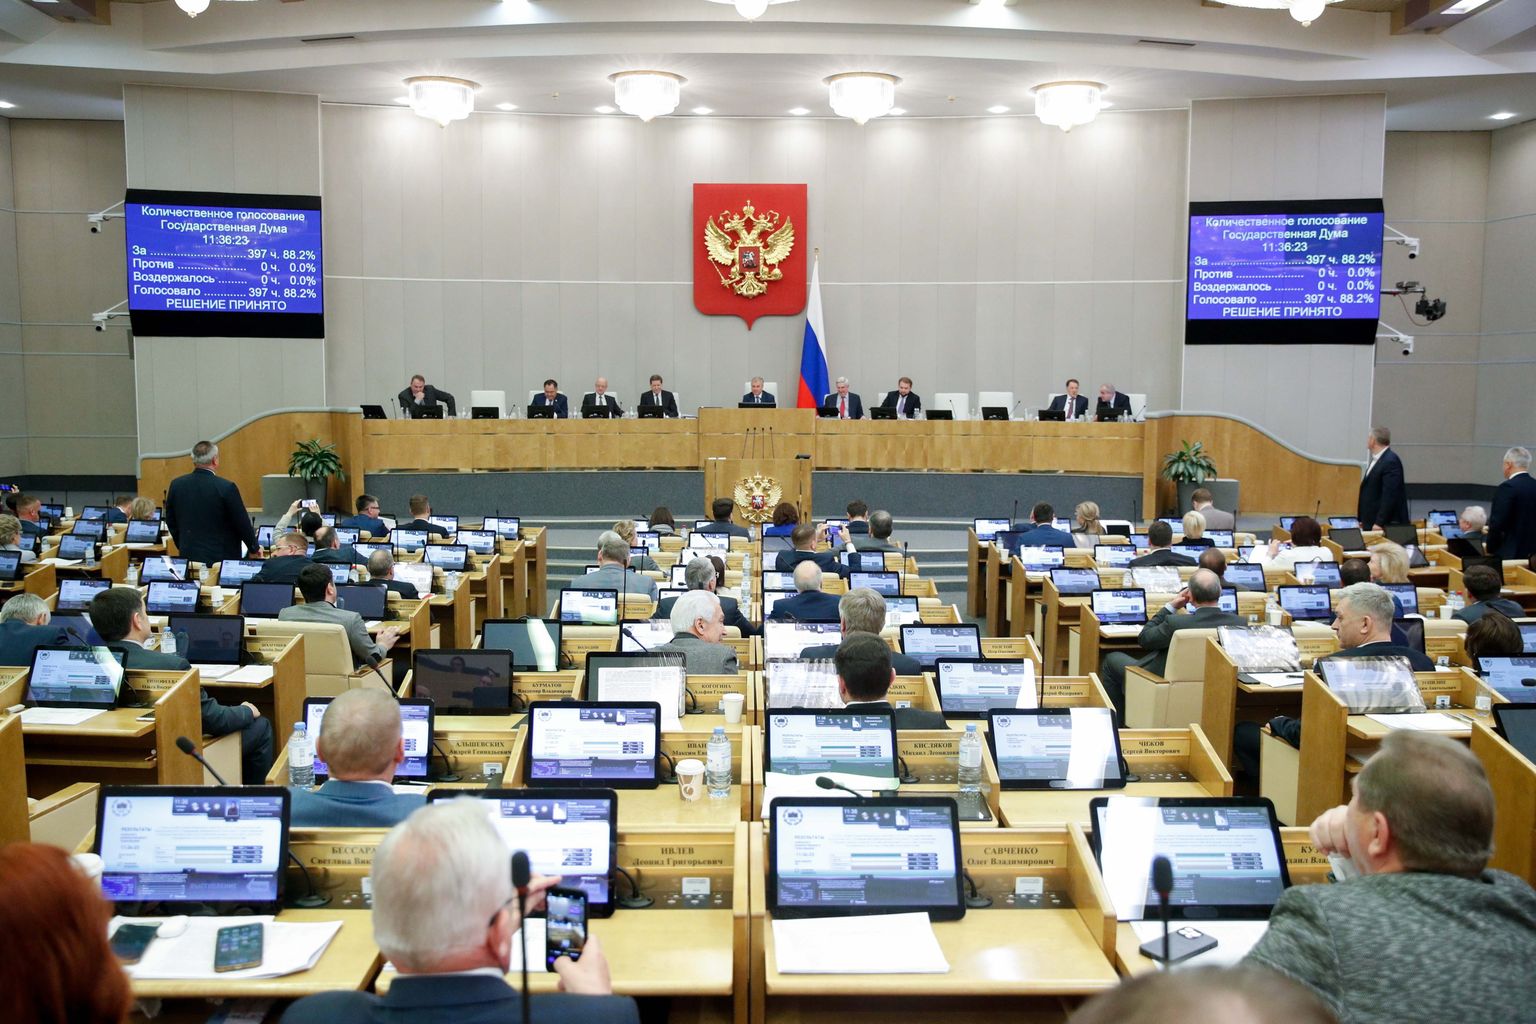 Venemaa duuma istungil 24. novembril 2022. Pilt on illustreeriv